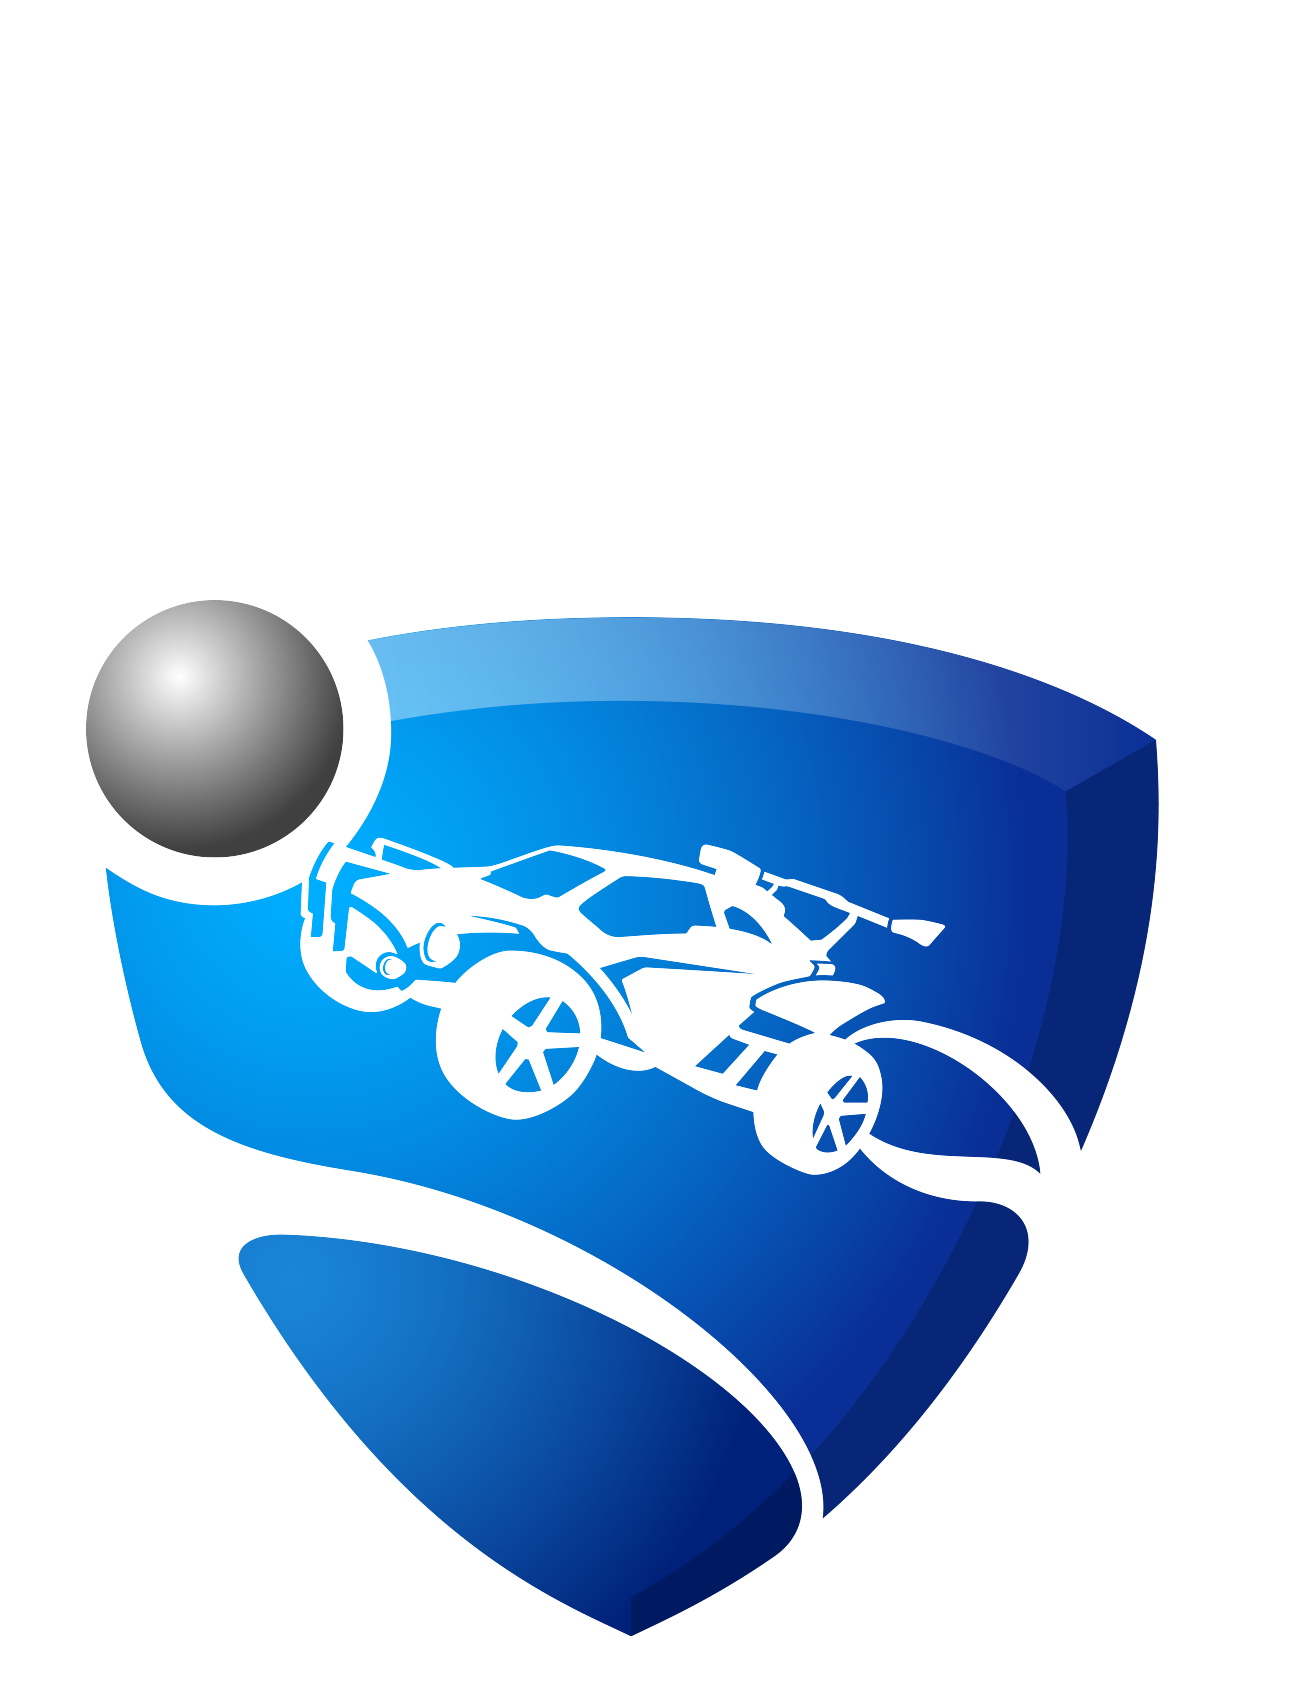 Rocket League Logo PNG Image